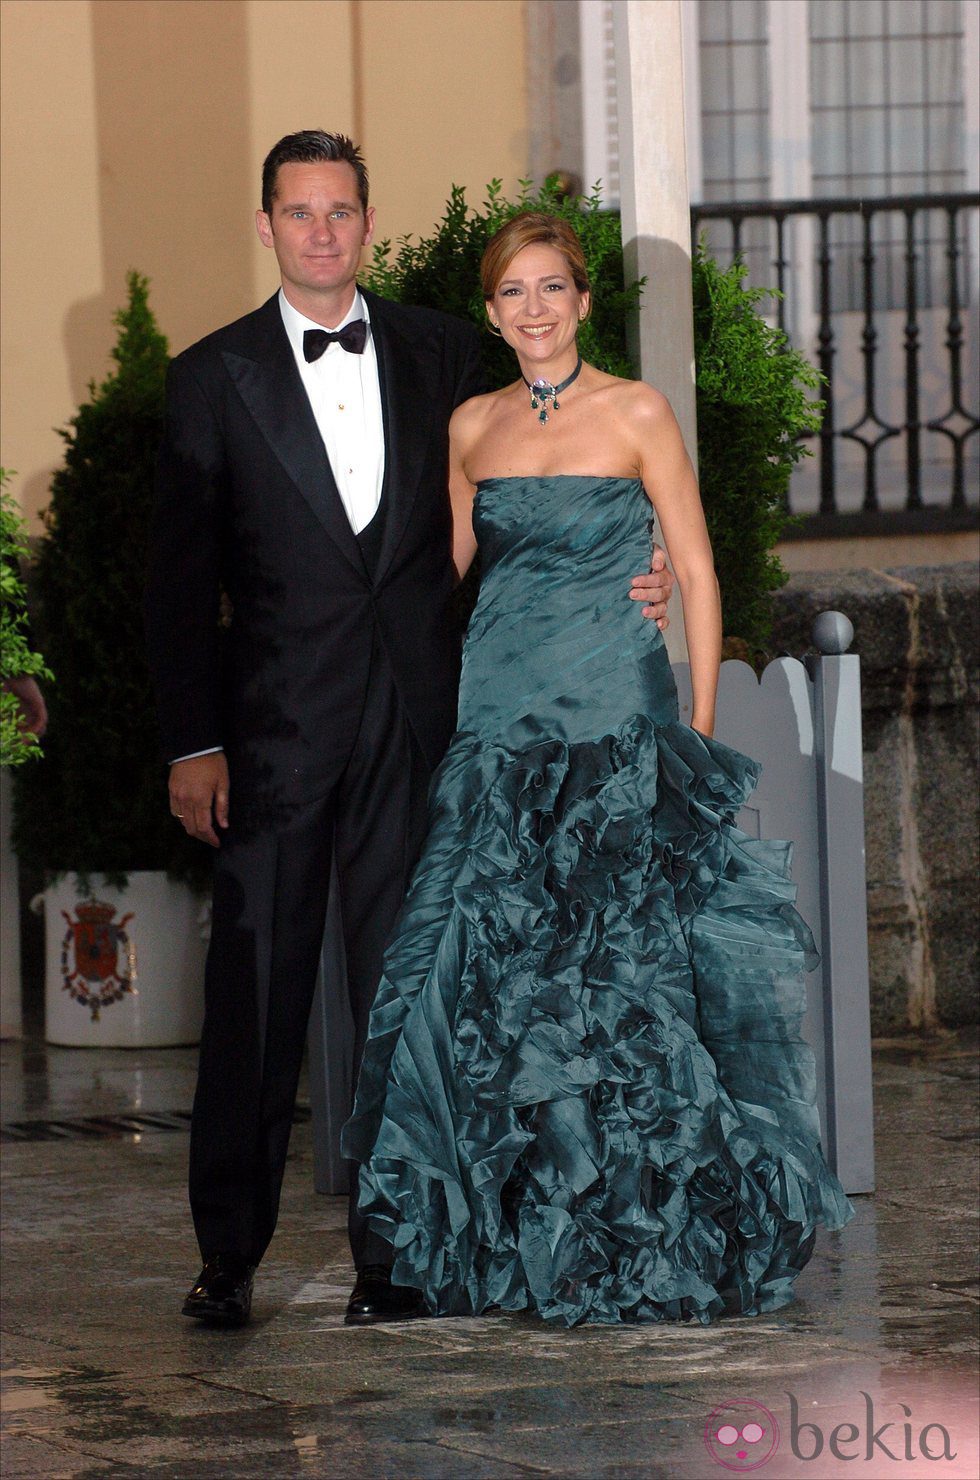 La Infanta Cristina e Iñaki Urdangarín en la cena de gala previa a la boda del Príncipe Felipe